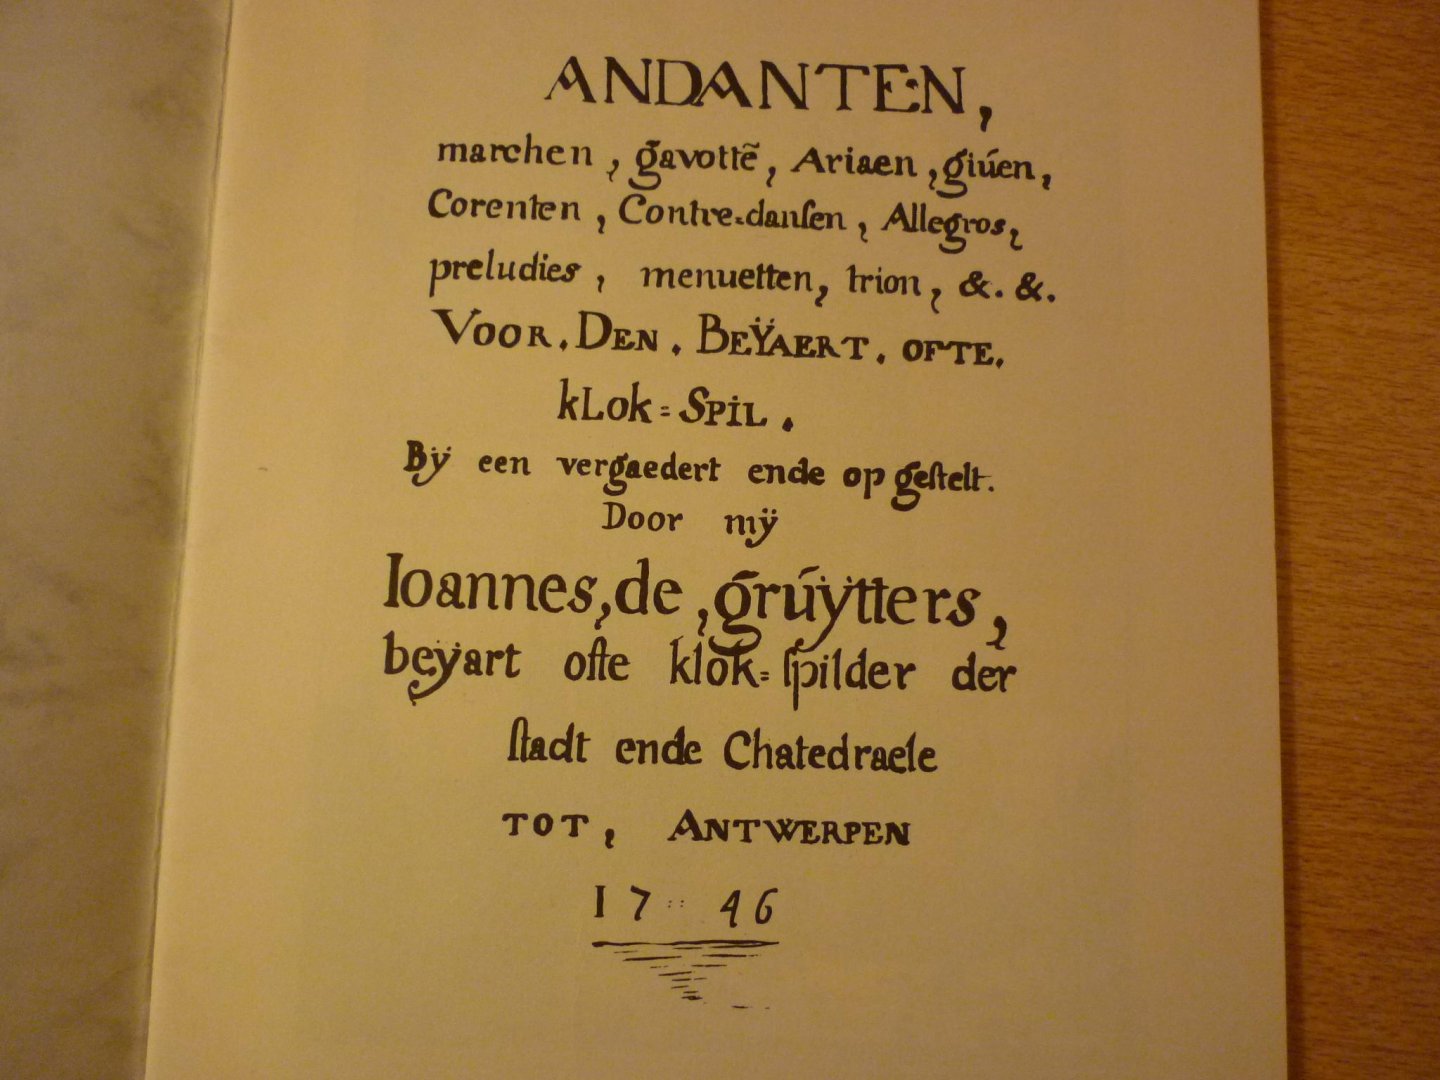 Gruijtters; Joannes de  /  Raymond Schroyens - 20 stukken uit het Clavier-boek van Ioannes de Gruijtters